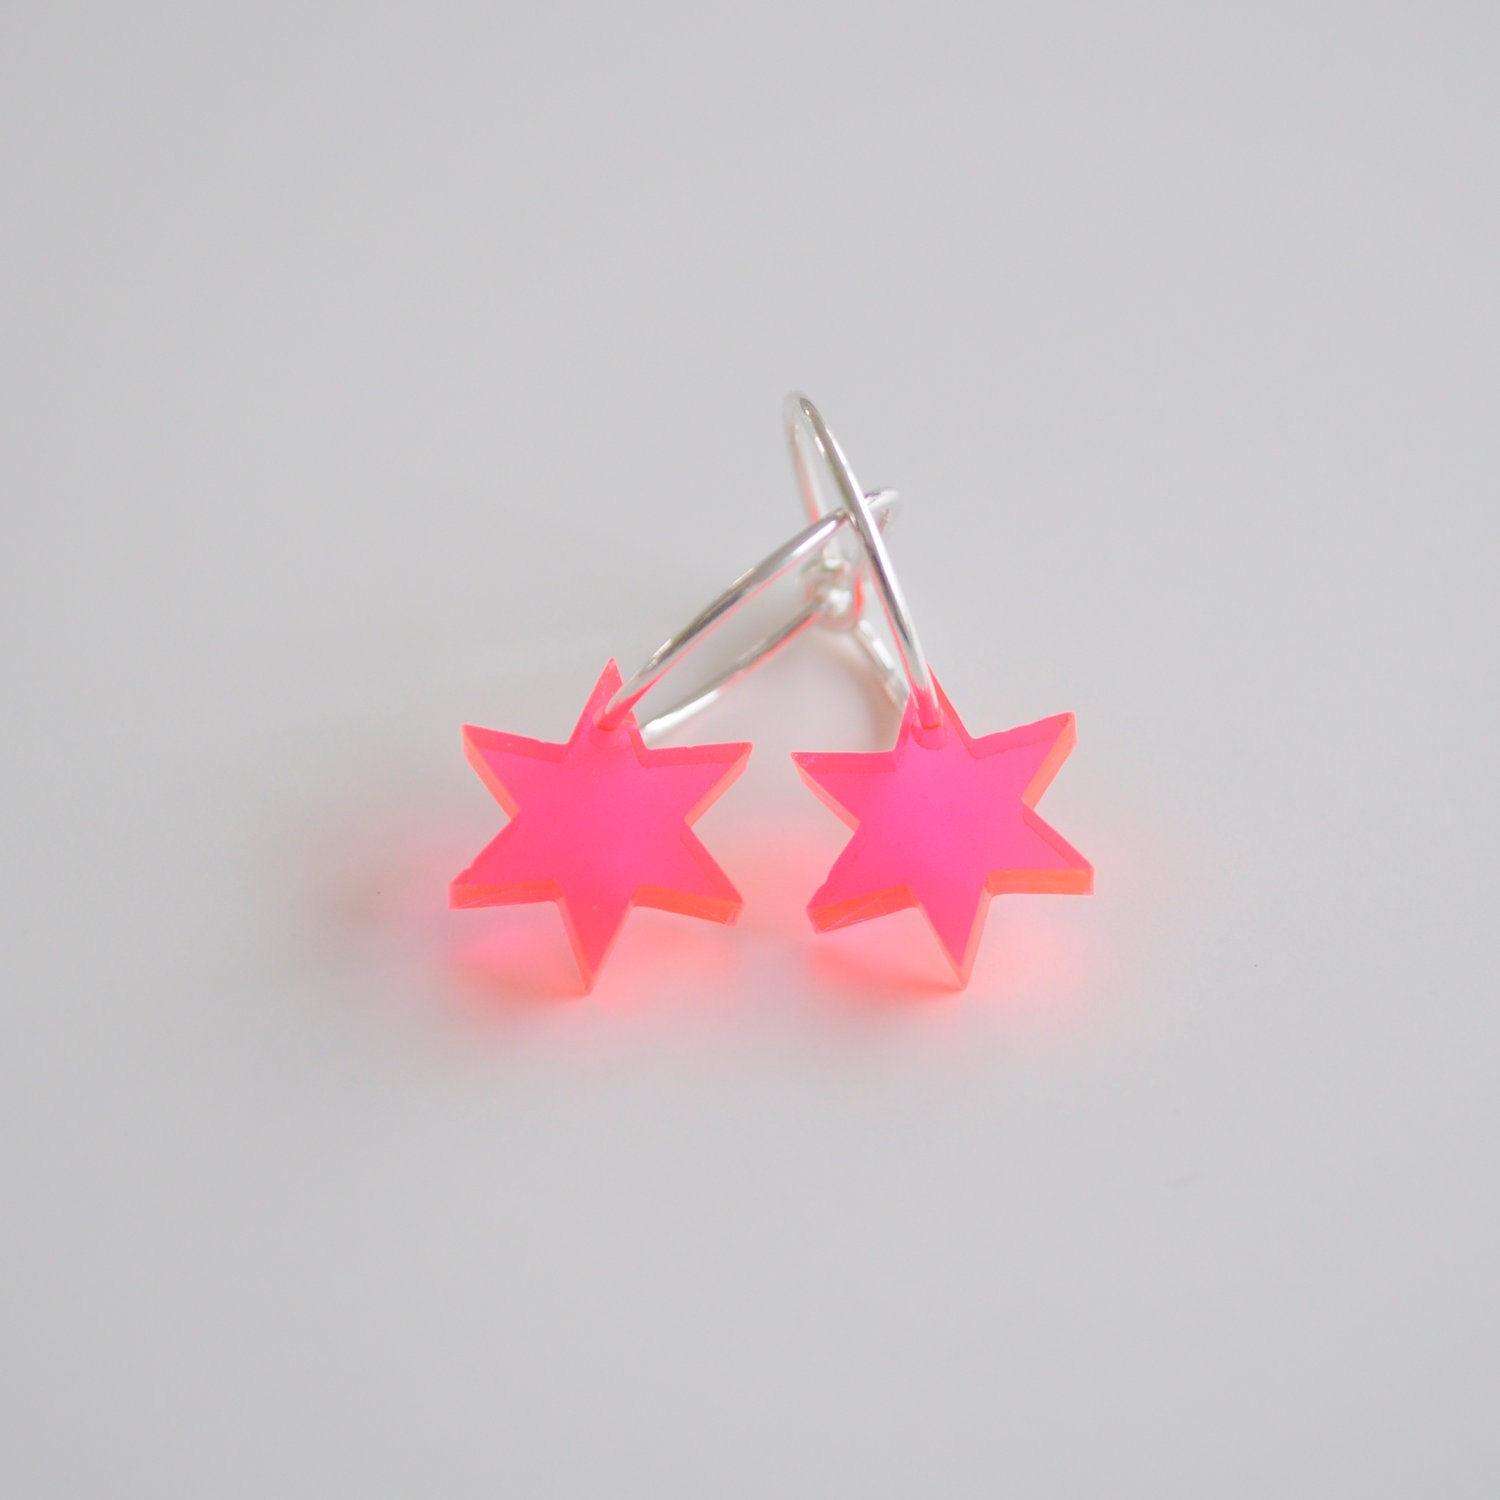 Little red acrylic star, sterling silver earrings